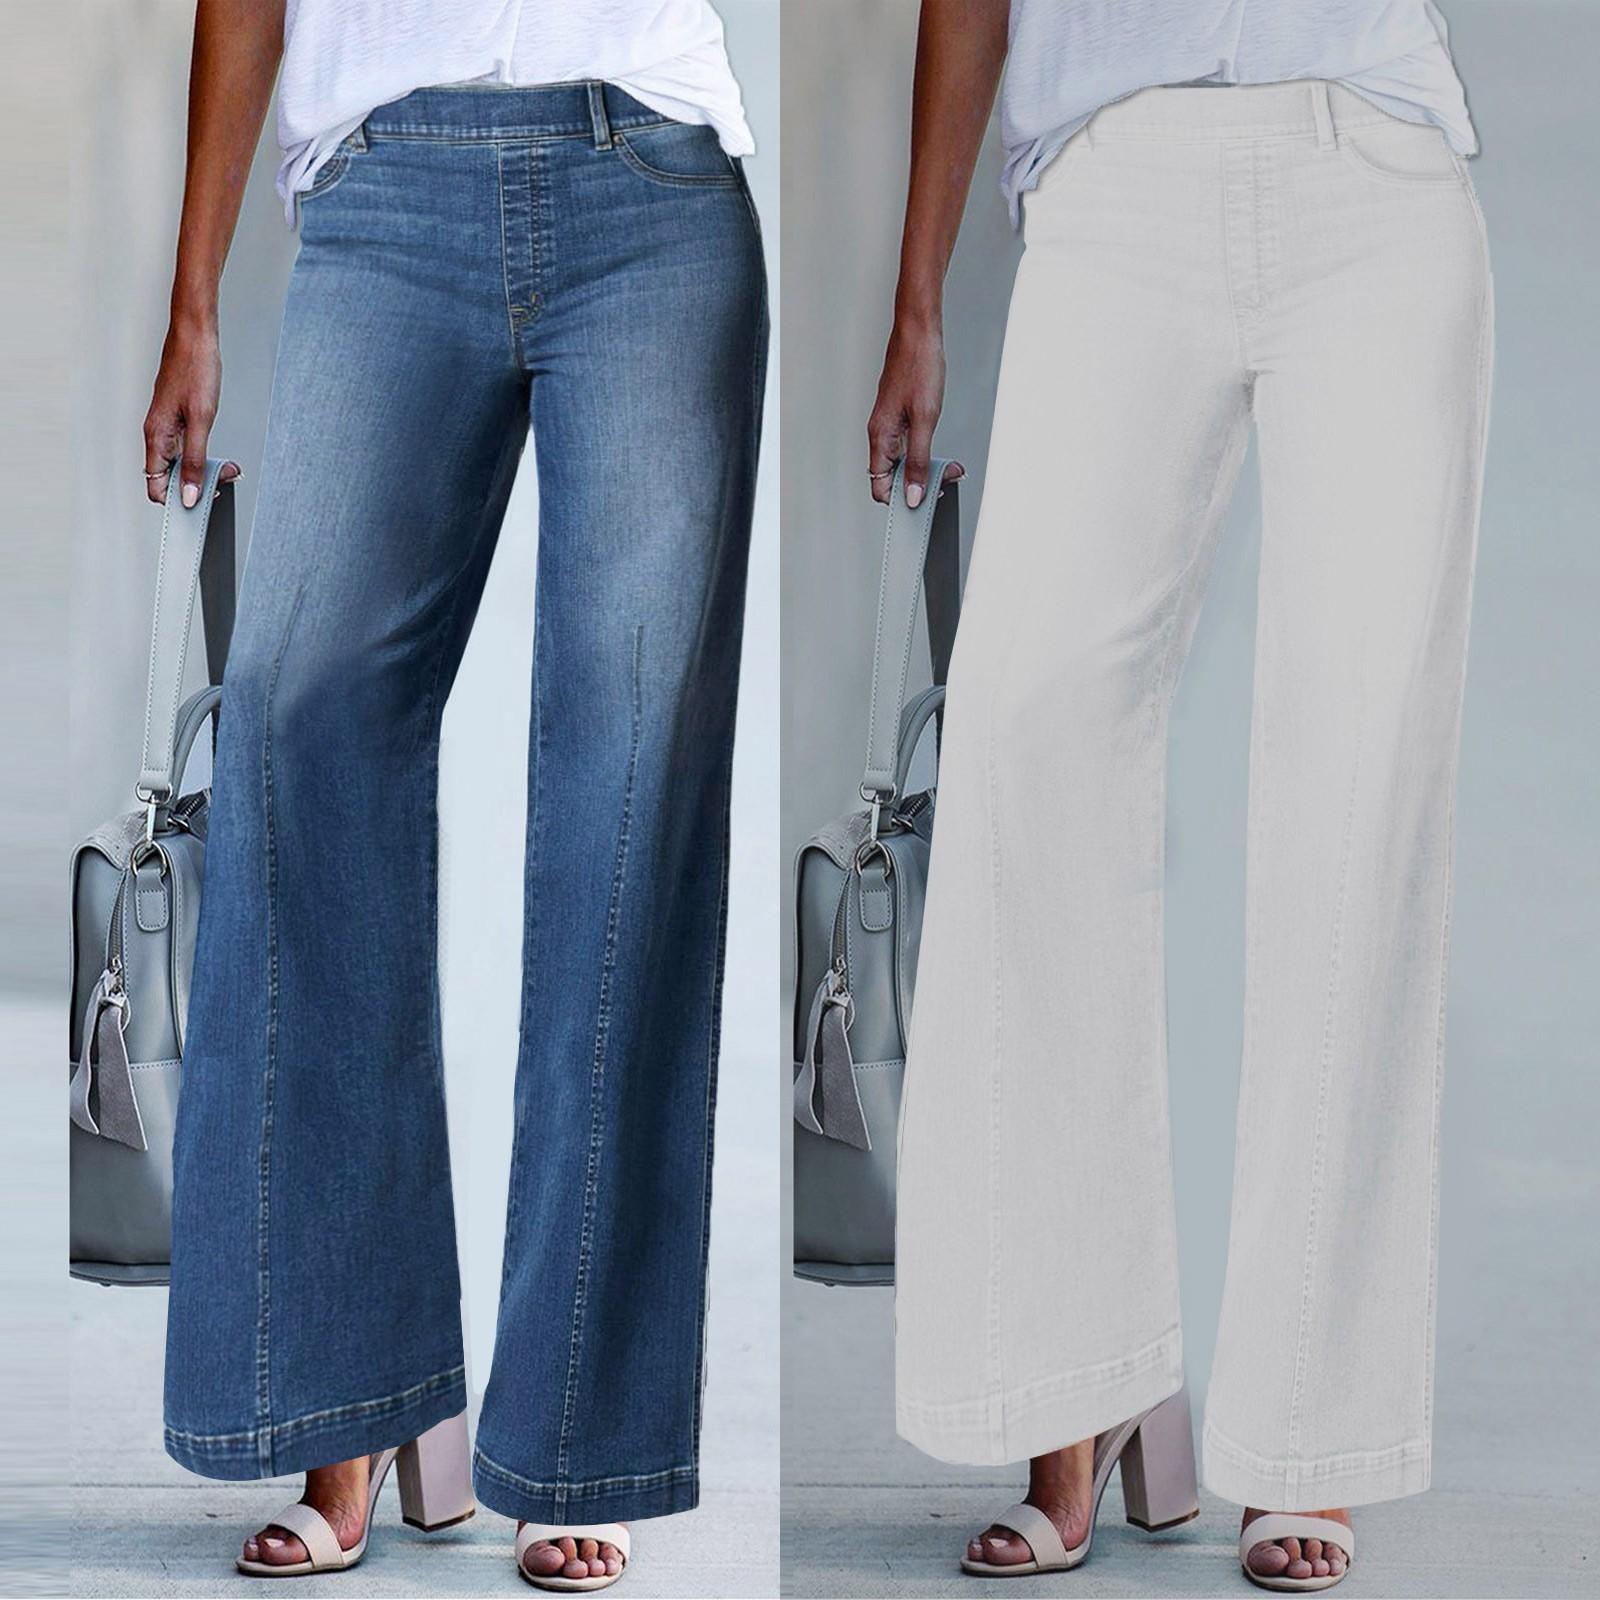 Ren Peishi Jeans met wijde pijpen aan de voorkant, elastische taille, stretchdenim, flare-jeans, hoog getailleerde Jean, Bell Bottom-jeans, verlengd